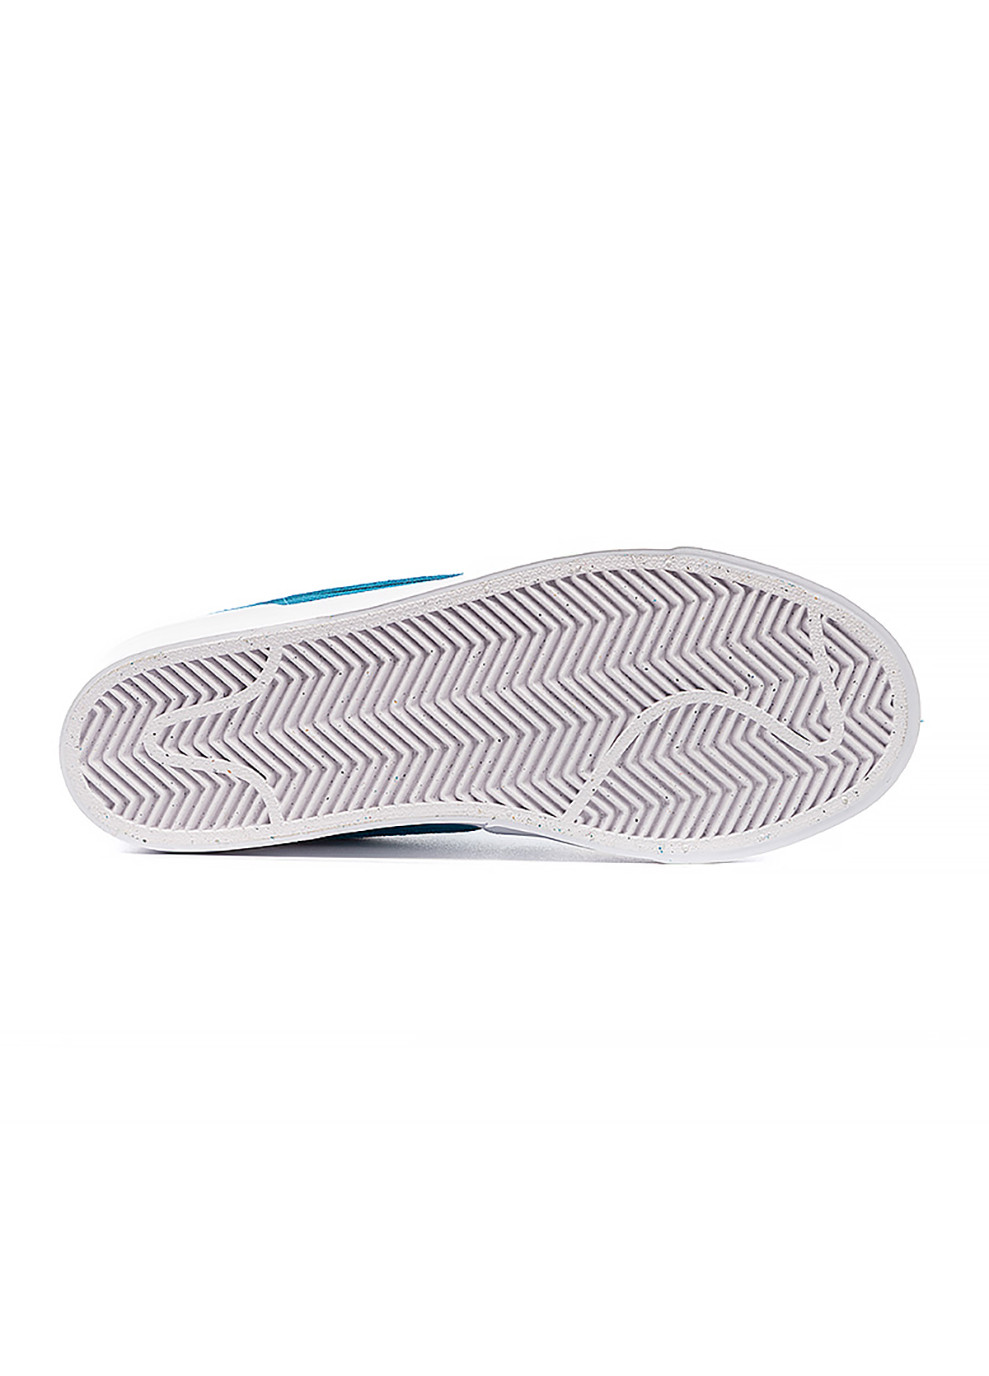 Голубые демисезонные женские кроссовки sb zoom pogo plus prm голубой Nike